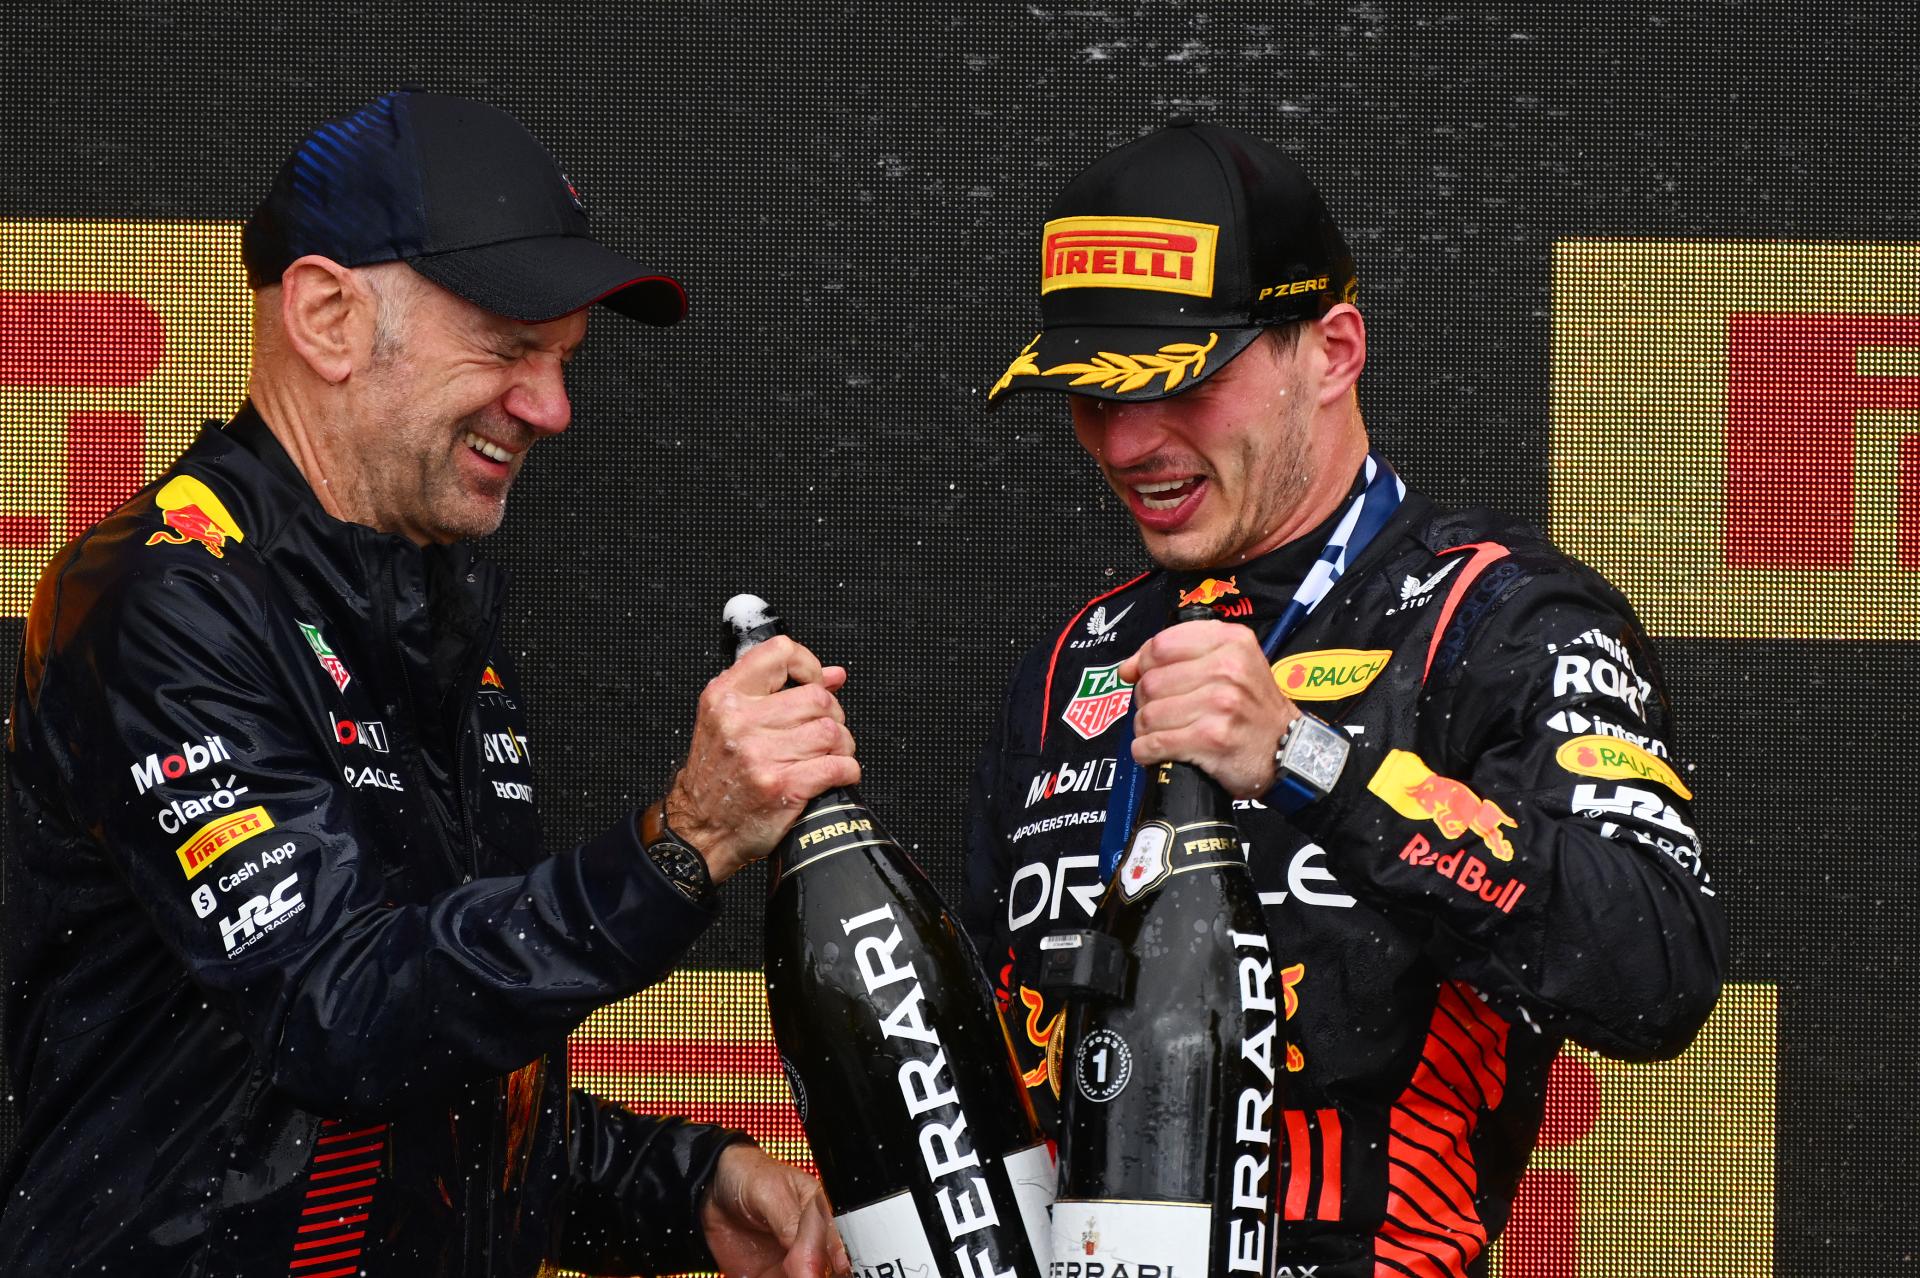 L'ex pilota di Formula 1 ipotizza una possibile partenza di Verstappen dal team in seguito all'addio di Newey dalla Red Bull.